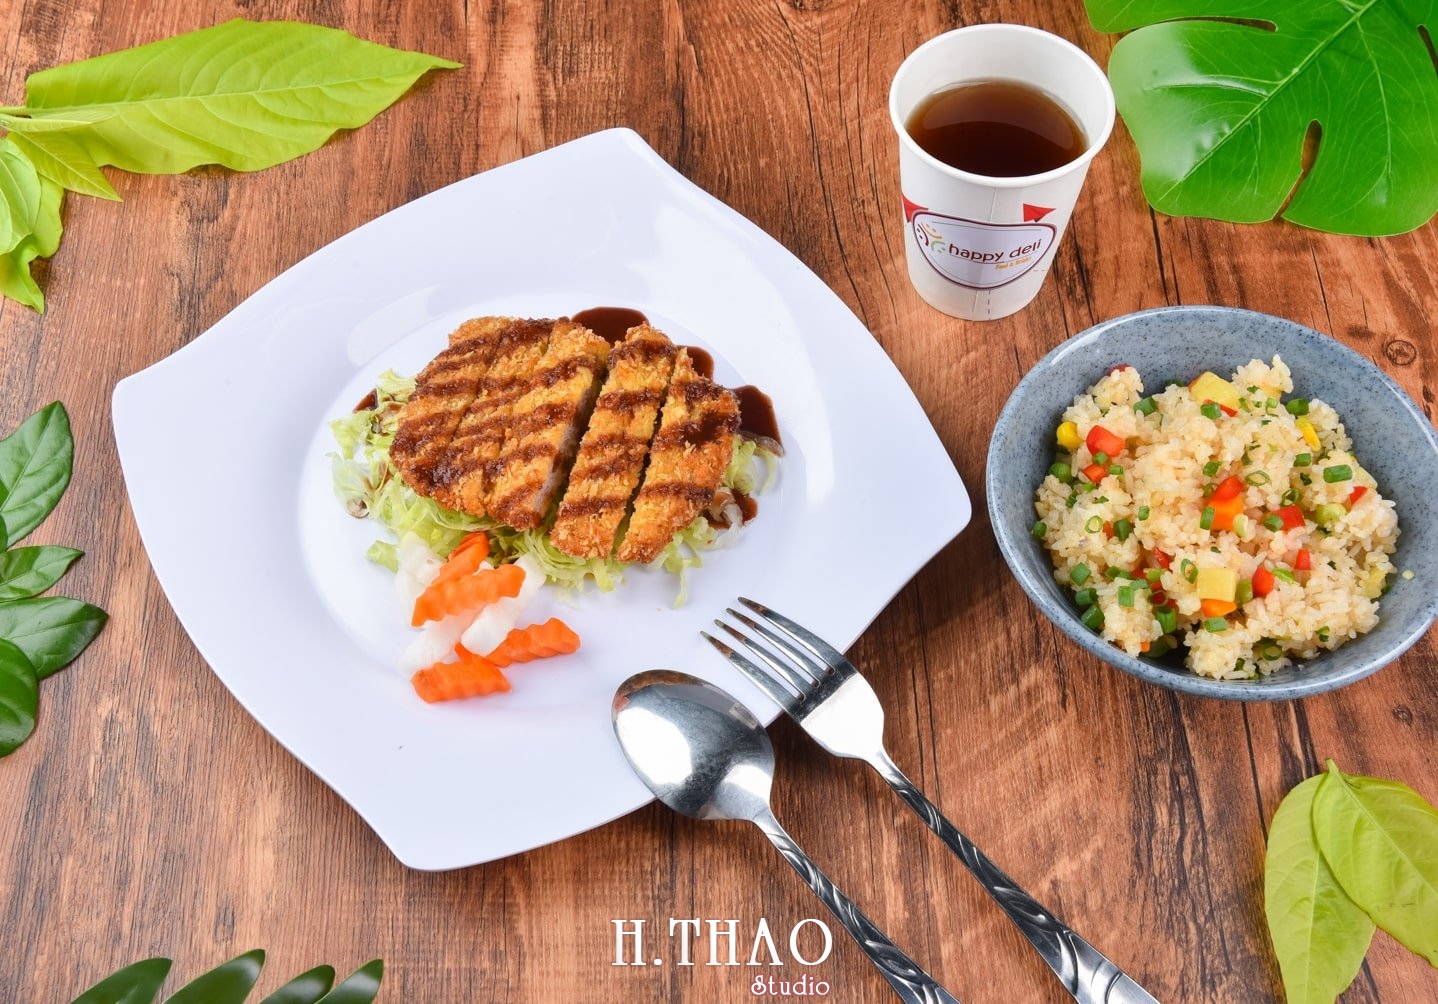 Anh food layout 6 min - Dịch vụ chụp ảnh đồ ăn đẹp, giá rẻ tại TpHCM - HThao Studio